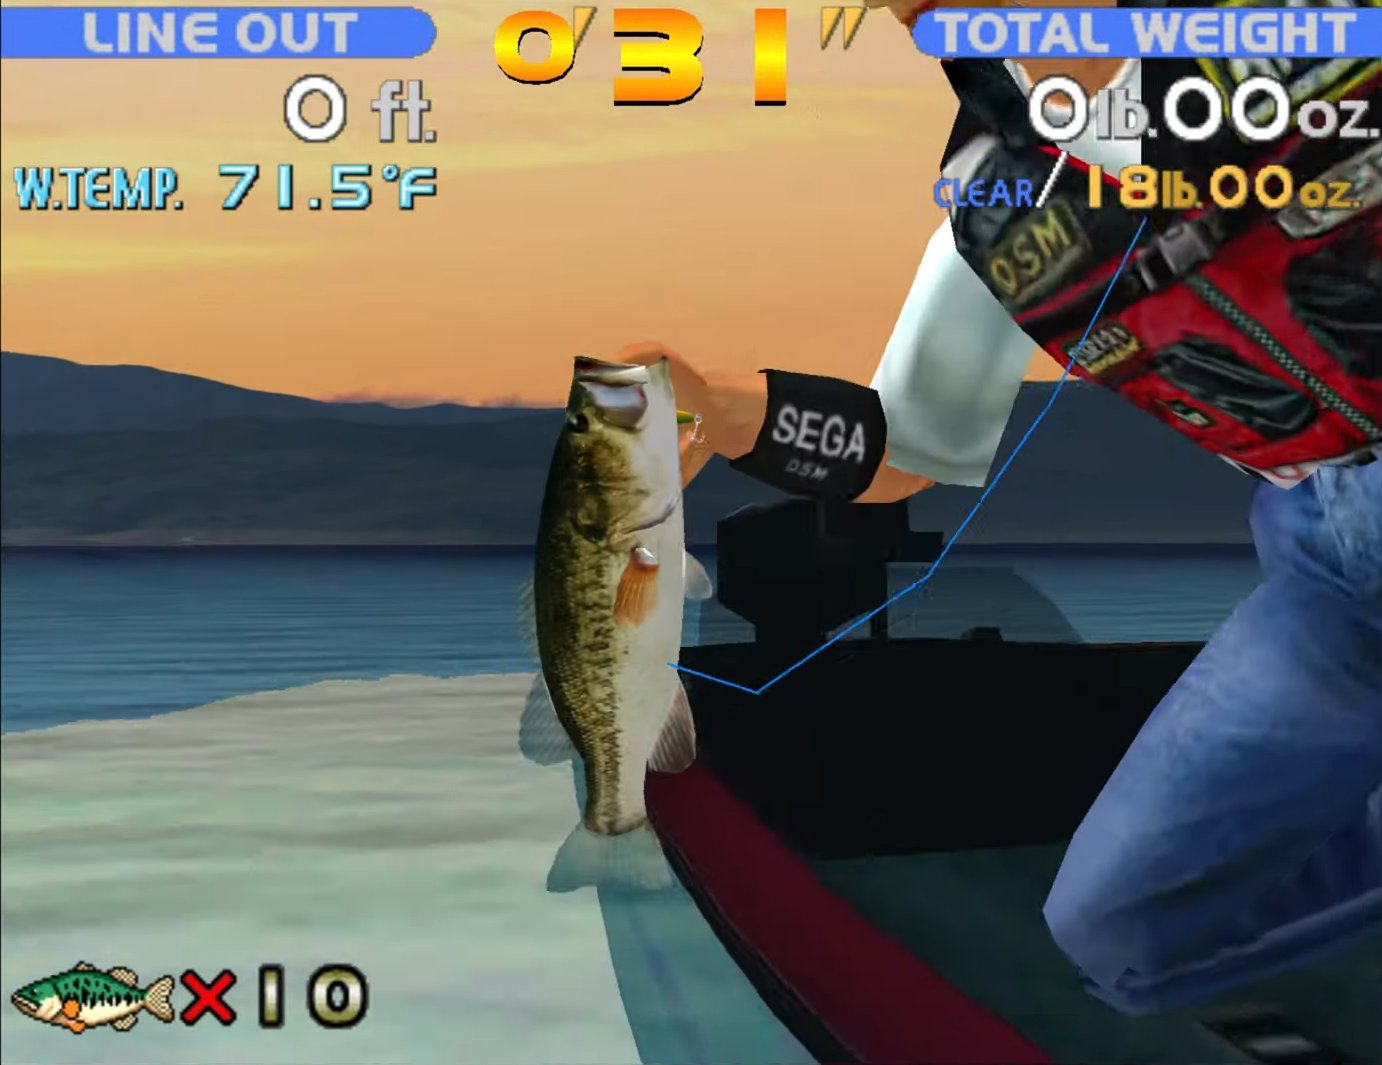 𝐃𝐫𝐞𝐚𝐦𝐜𝐚𝐬𝐭 𝐀𝐞𝐬𝐭𝐡𝐞𝐭𝐢𝐜 on X: Sega Bass Fishing